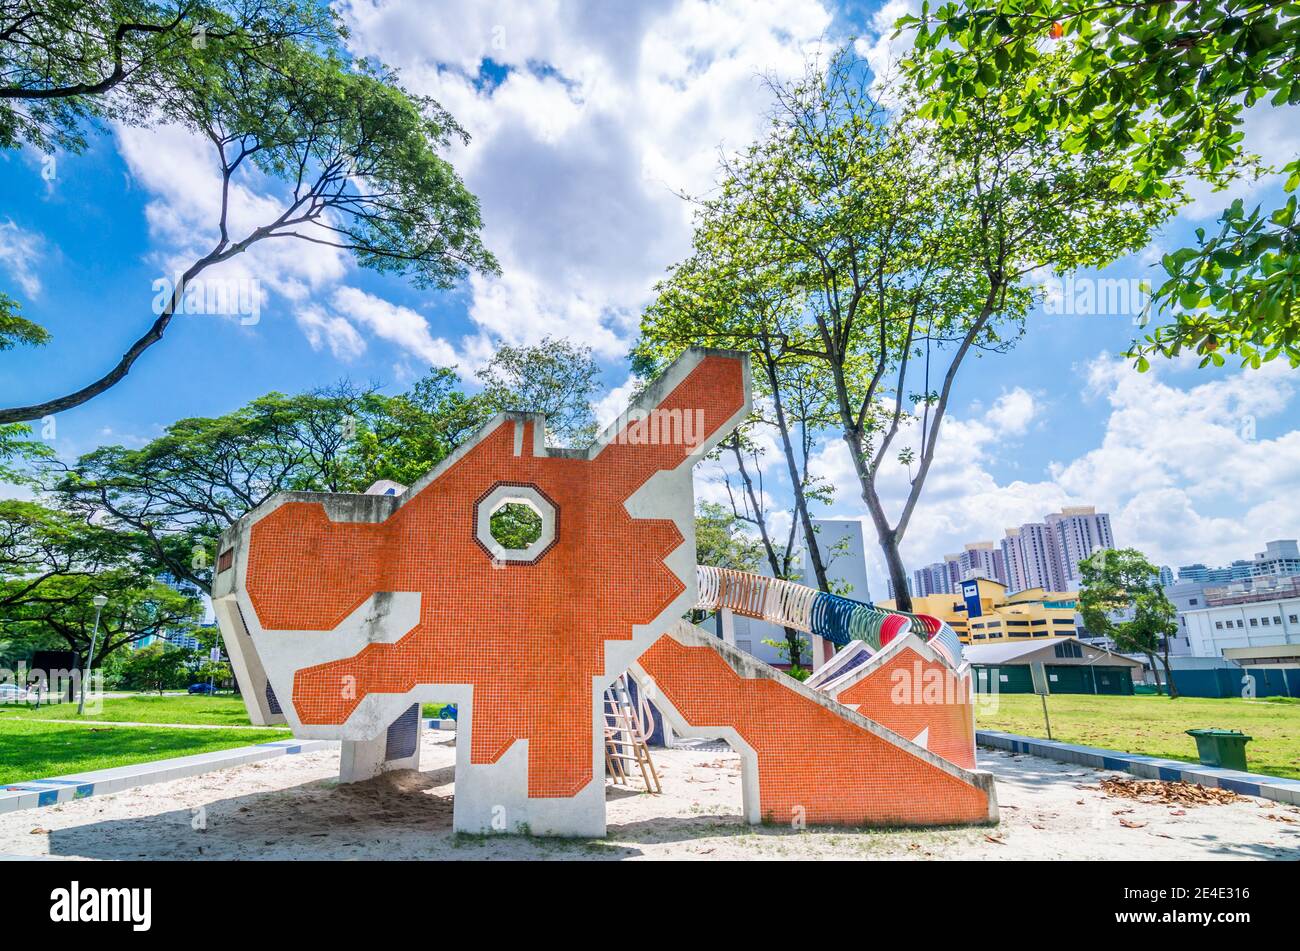 Toa Payoh Dragon Playground, il parco giochi a forma di drago basato su sabbia, un tempo famoso per i parchi giochi di Ang Mo Kio e Toa Payoh. Foto Stock